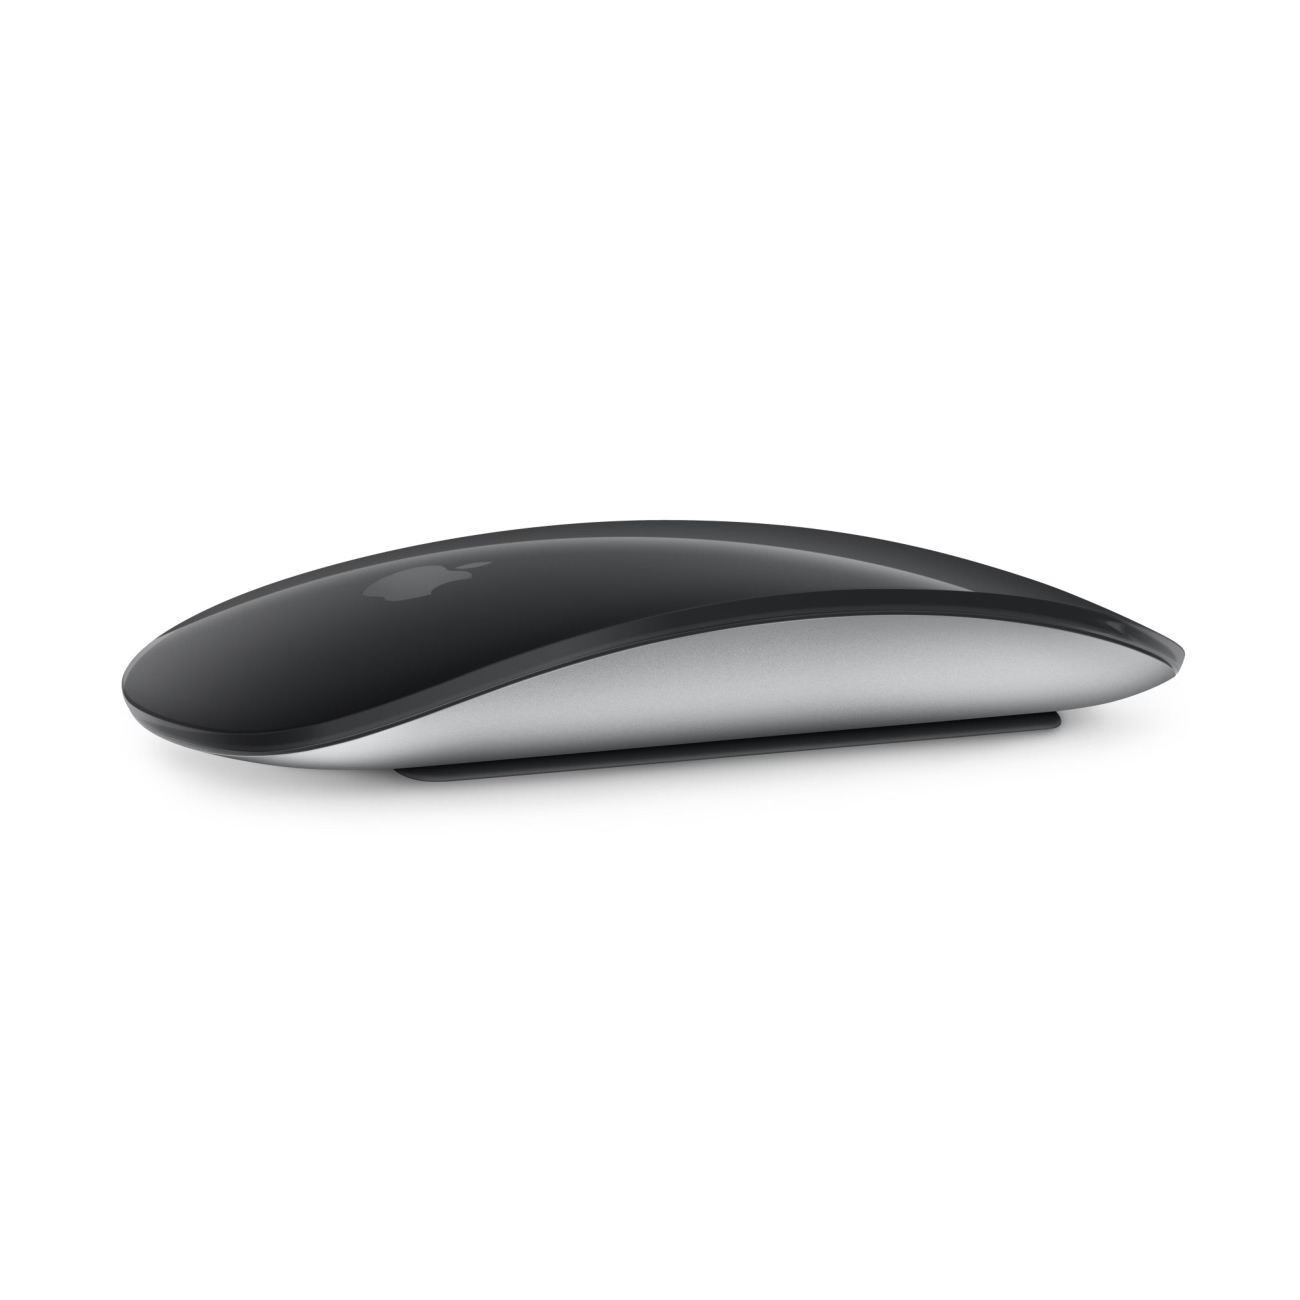 Мышь Apple Magic Mouse 3, чёрный